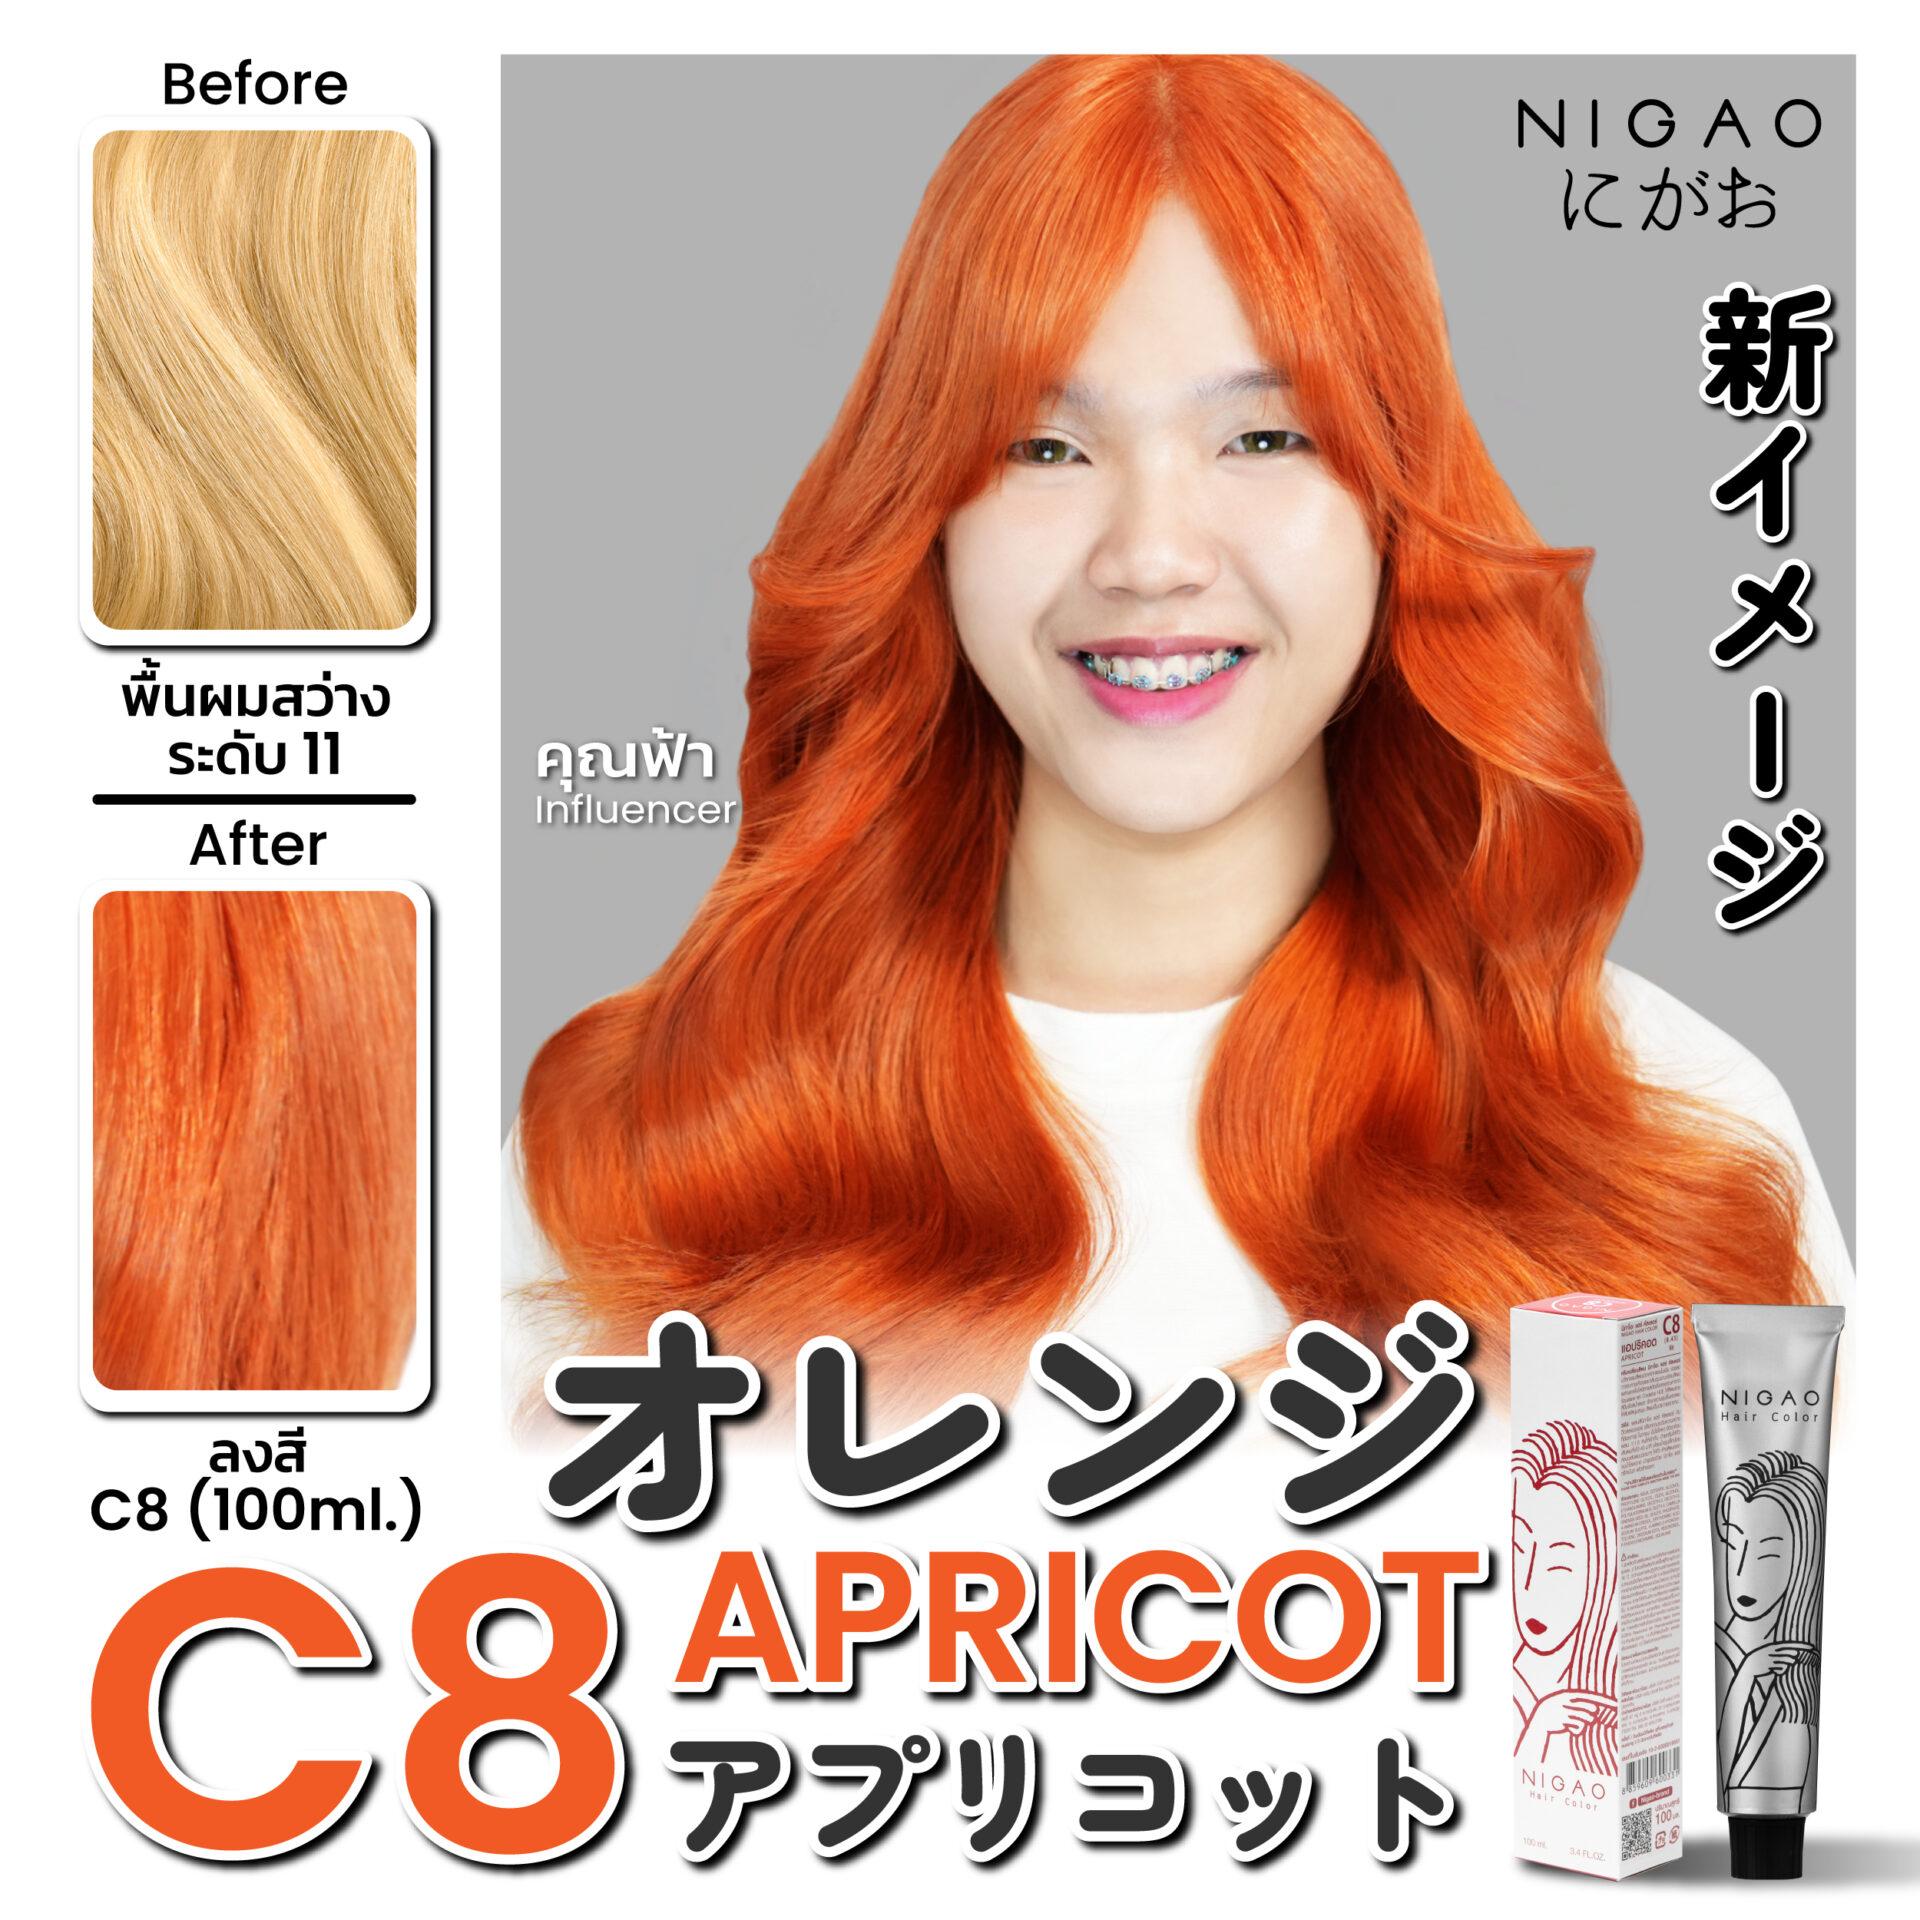 ภาพประกอบการโฆษณาผลิตภัณฑ์ครีมเปลี่ยนสีผมสีส้ม